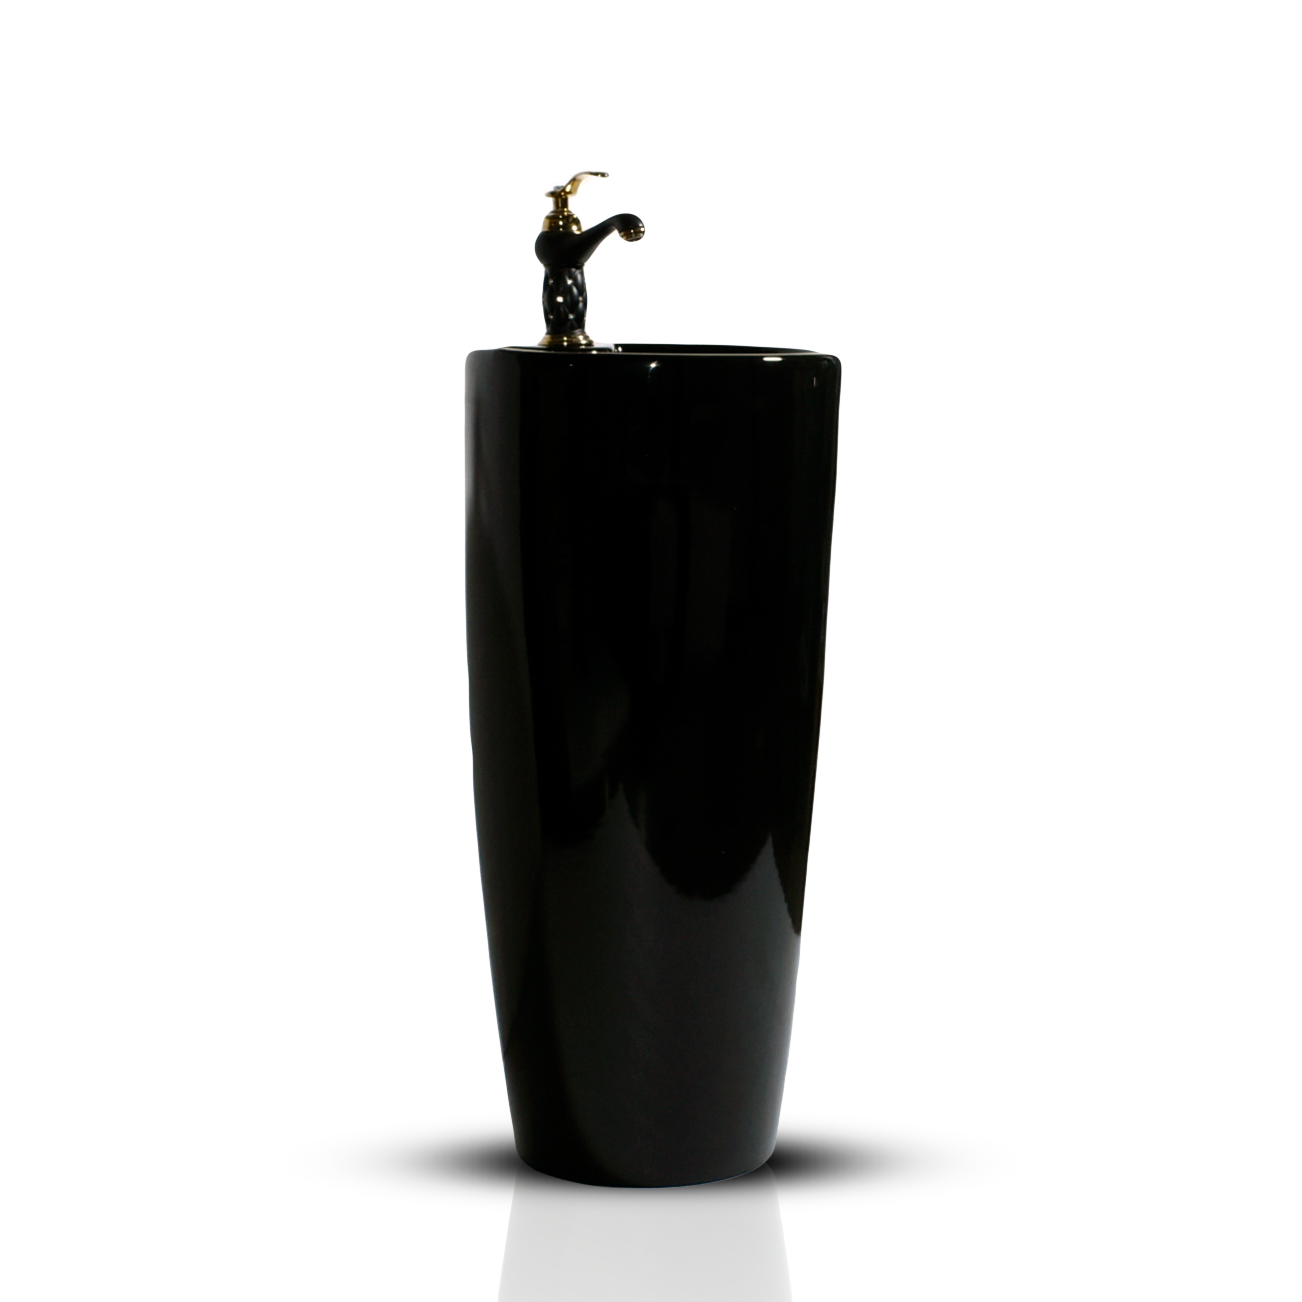 pedestal wash basin design black color